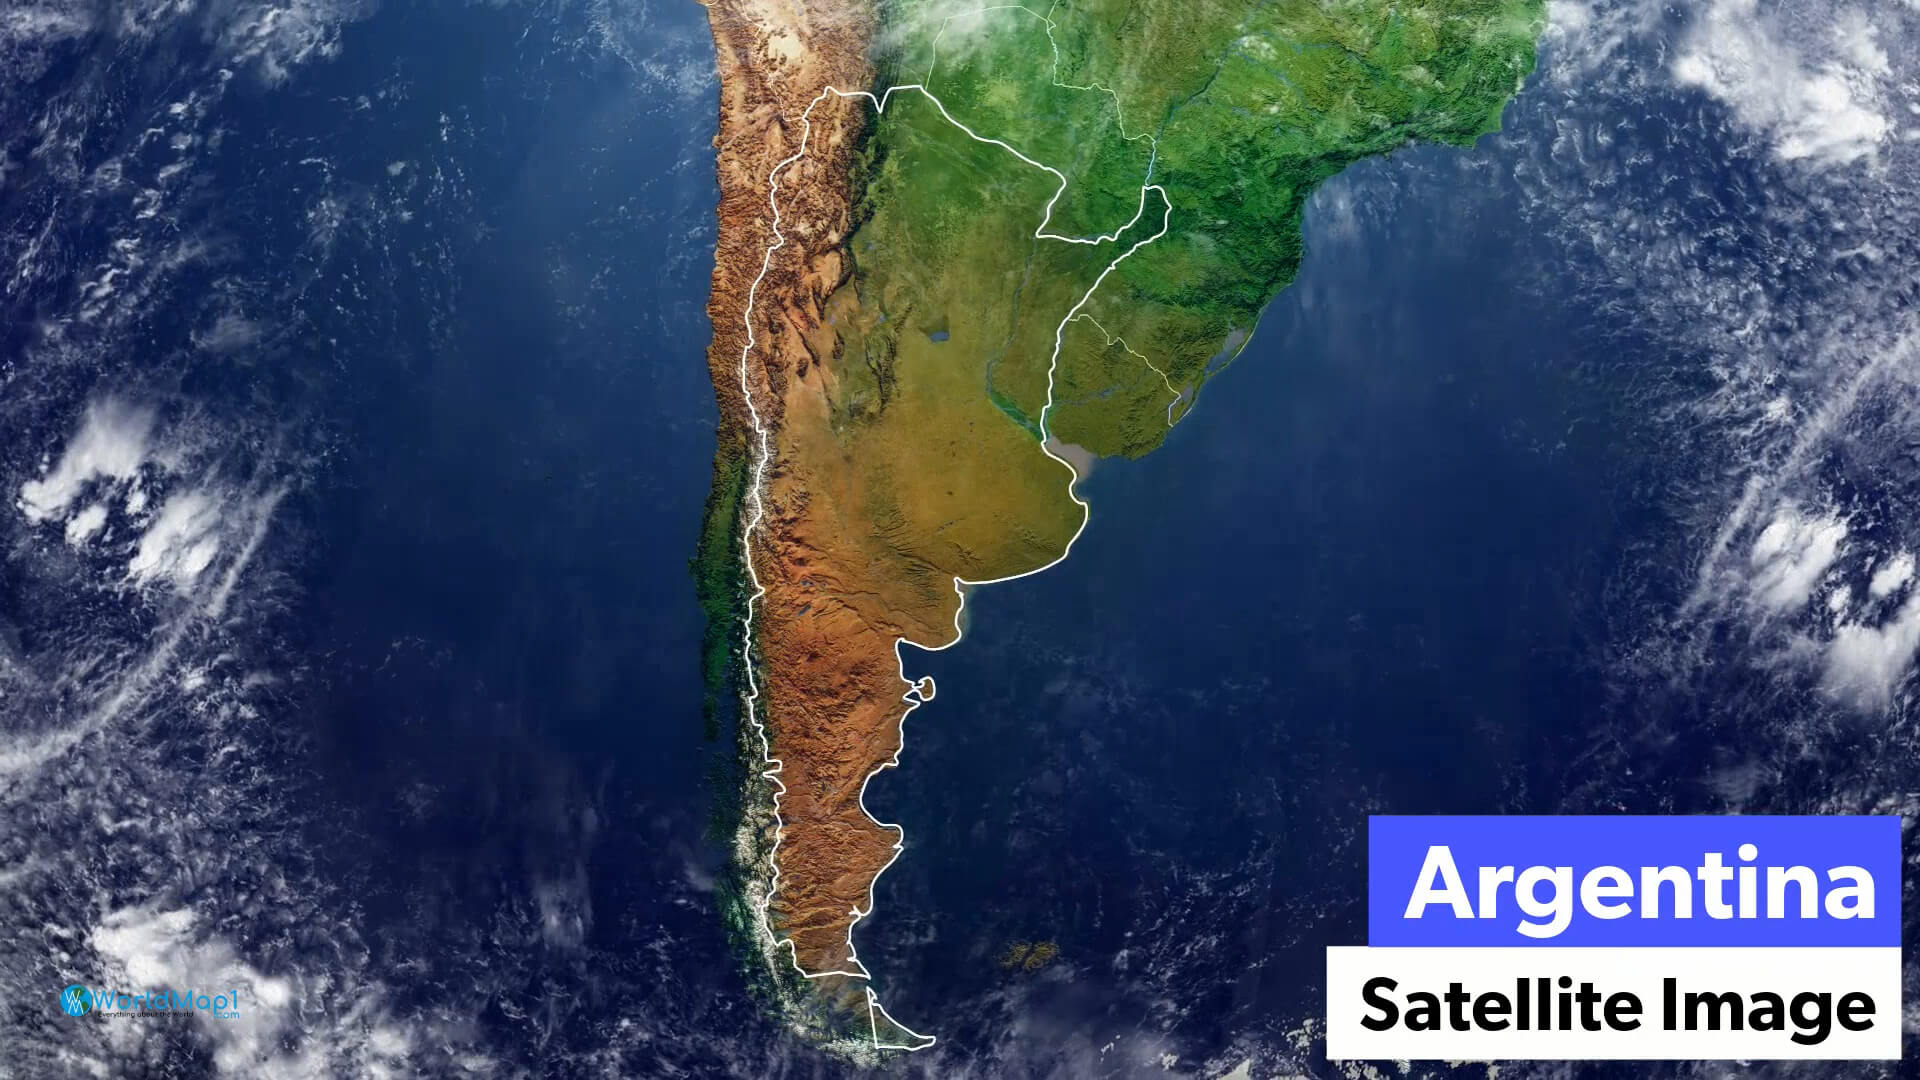 Argentina Satellite Image